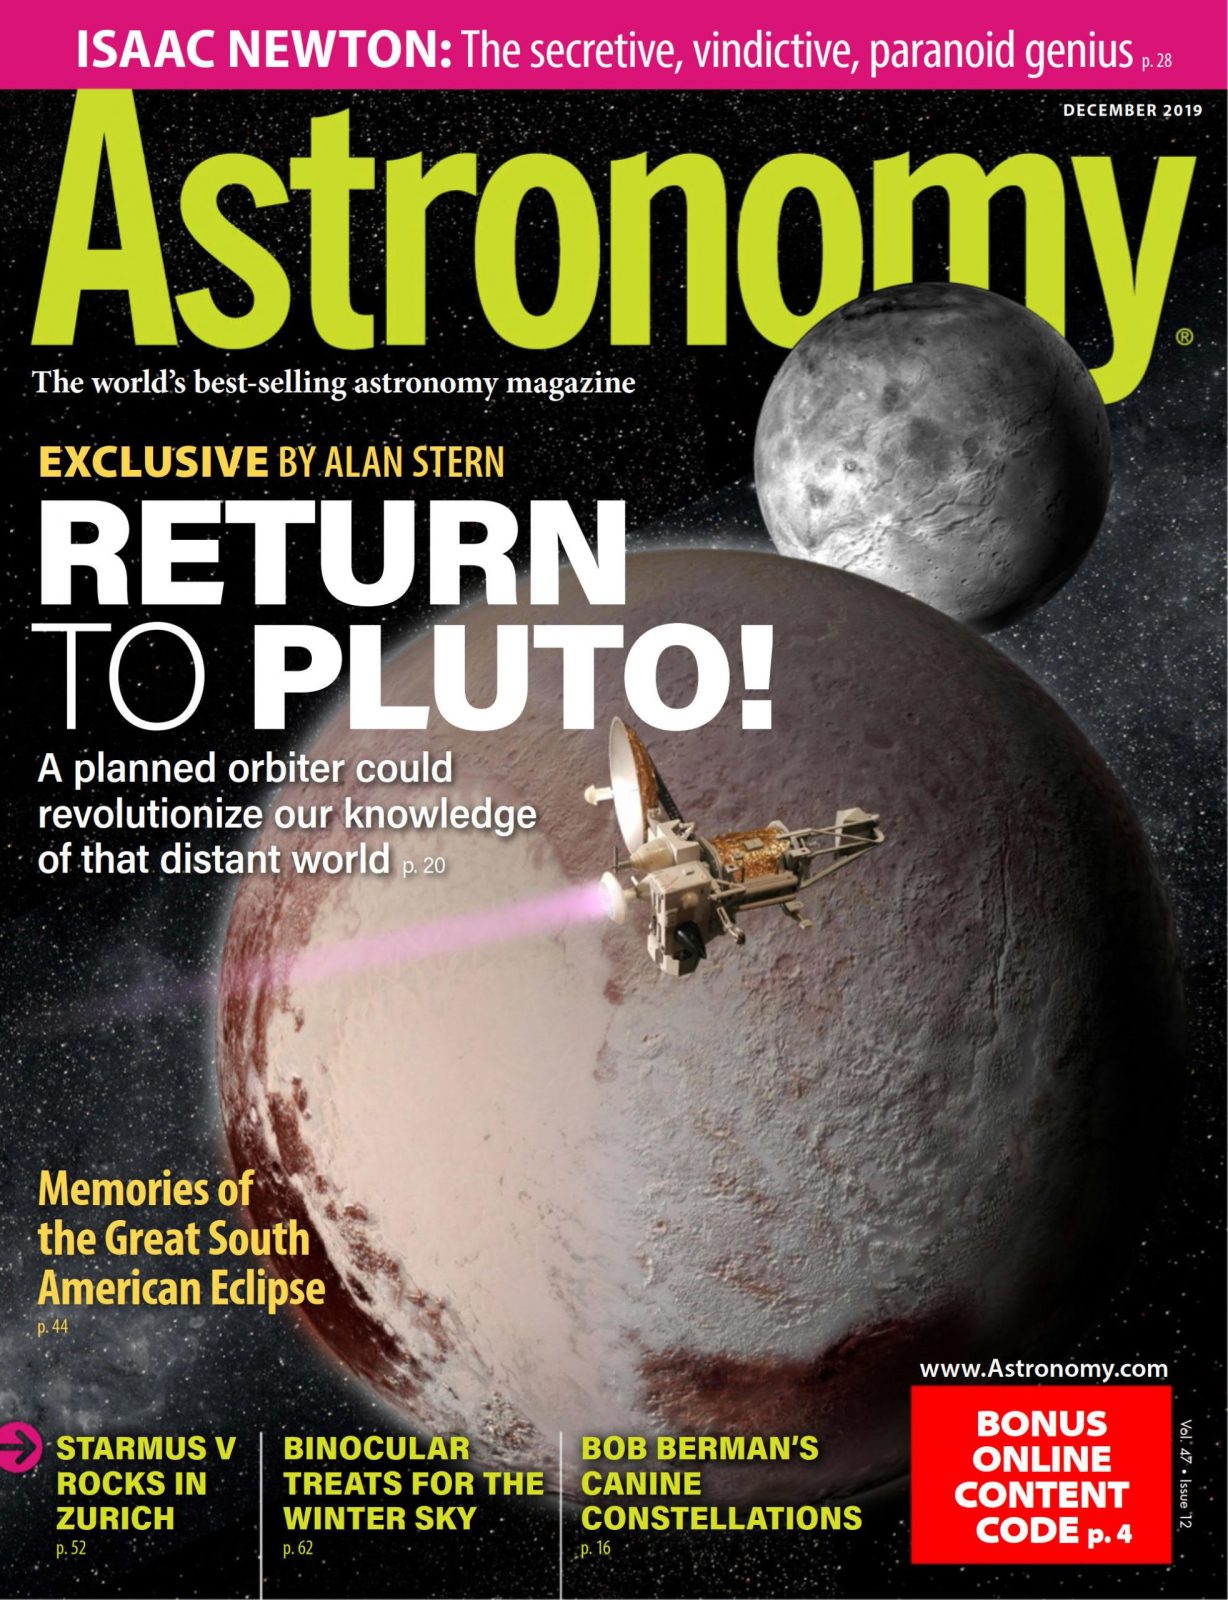 Astronomy 天文学杂志 DECEMBER 2019